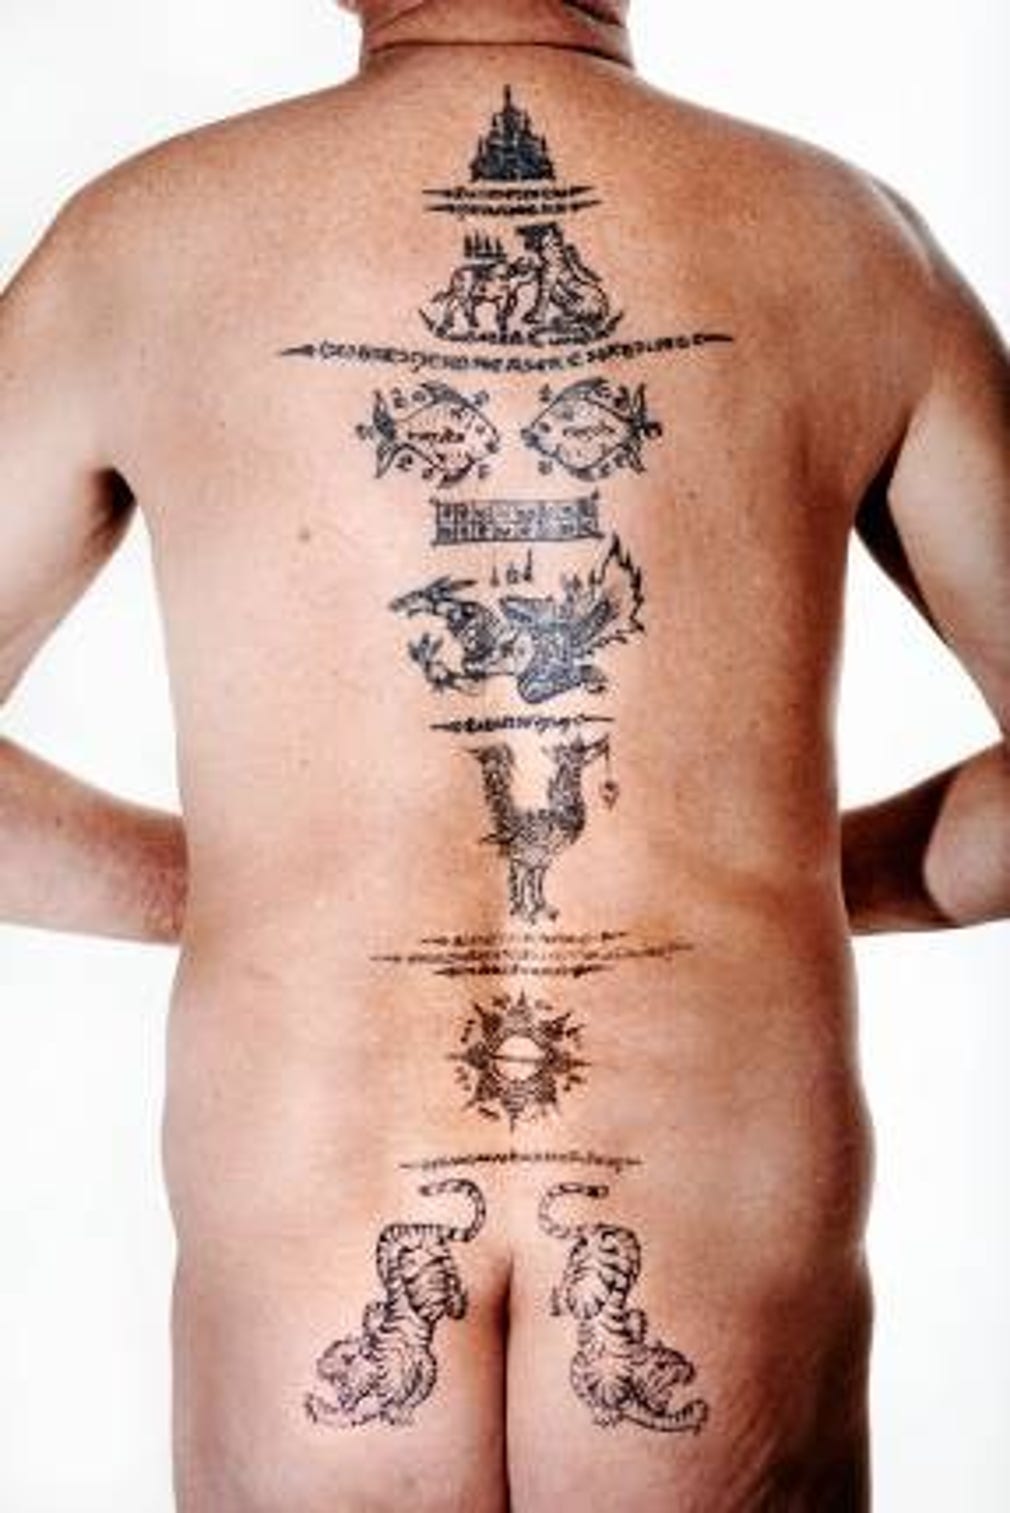 Bosse Ljungström. Ålder: 70 år. Gör: AD, resenär. Tatuering: Khmersymboler över hela ryggen.